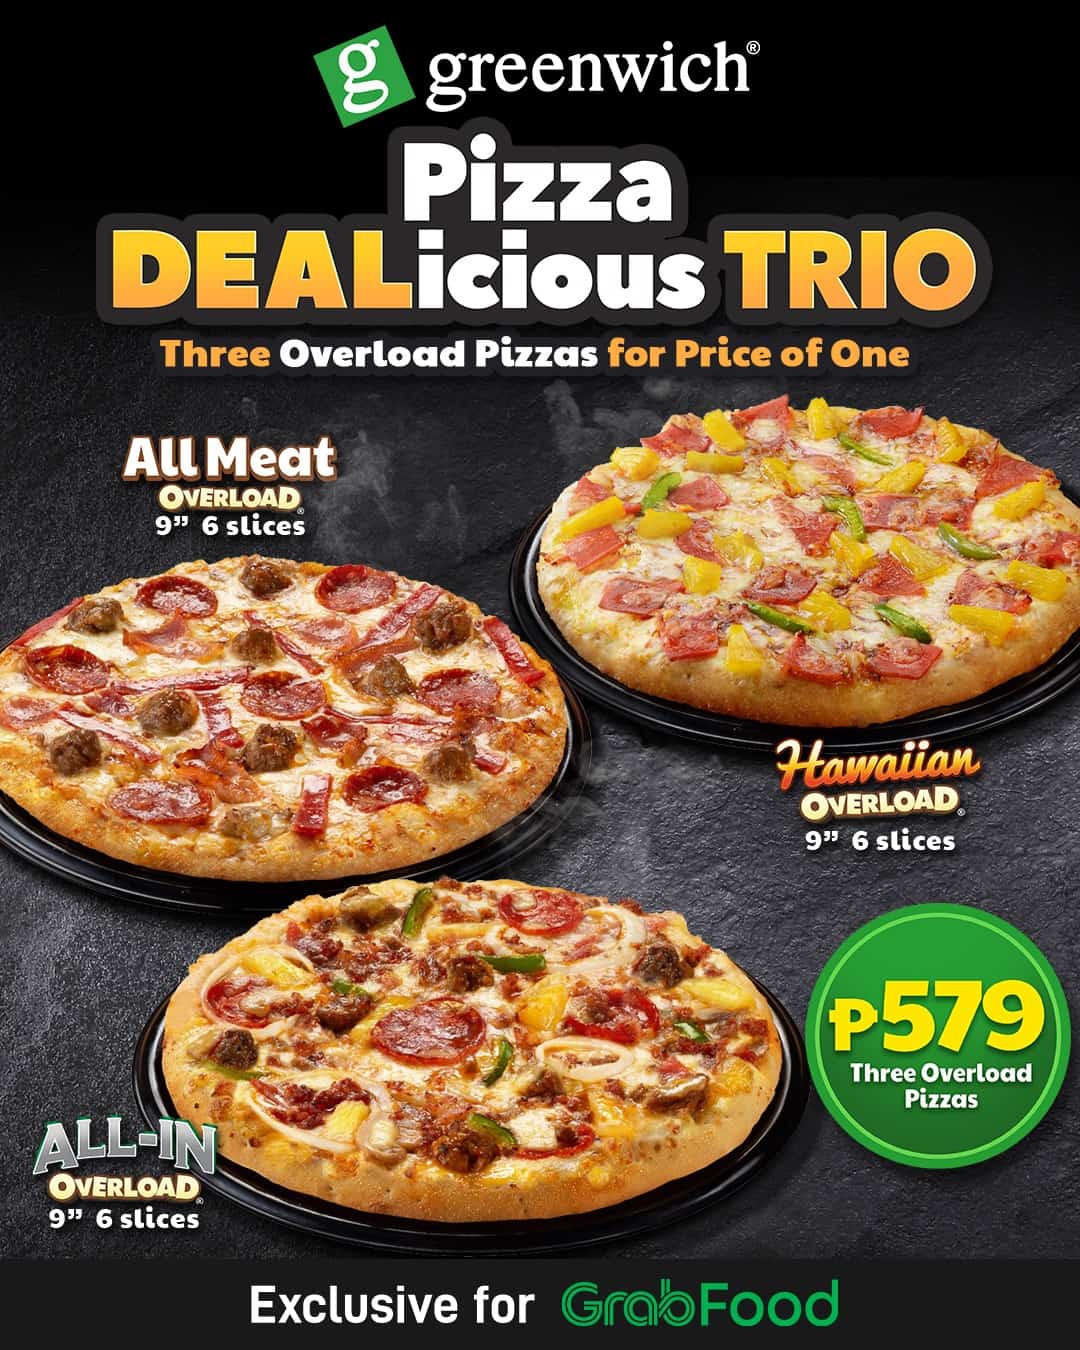 Delicious Trio Pizza on Greenwich Menu Philippines